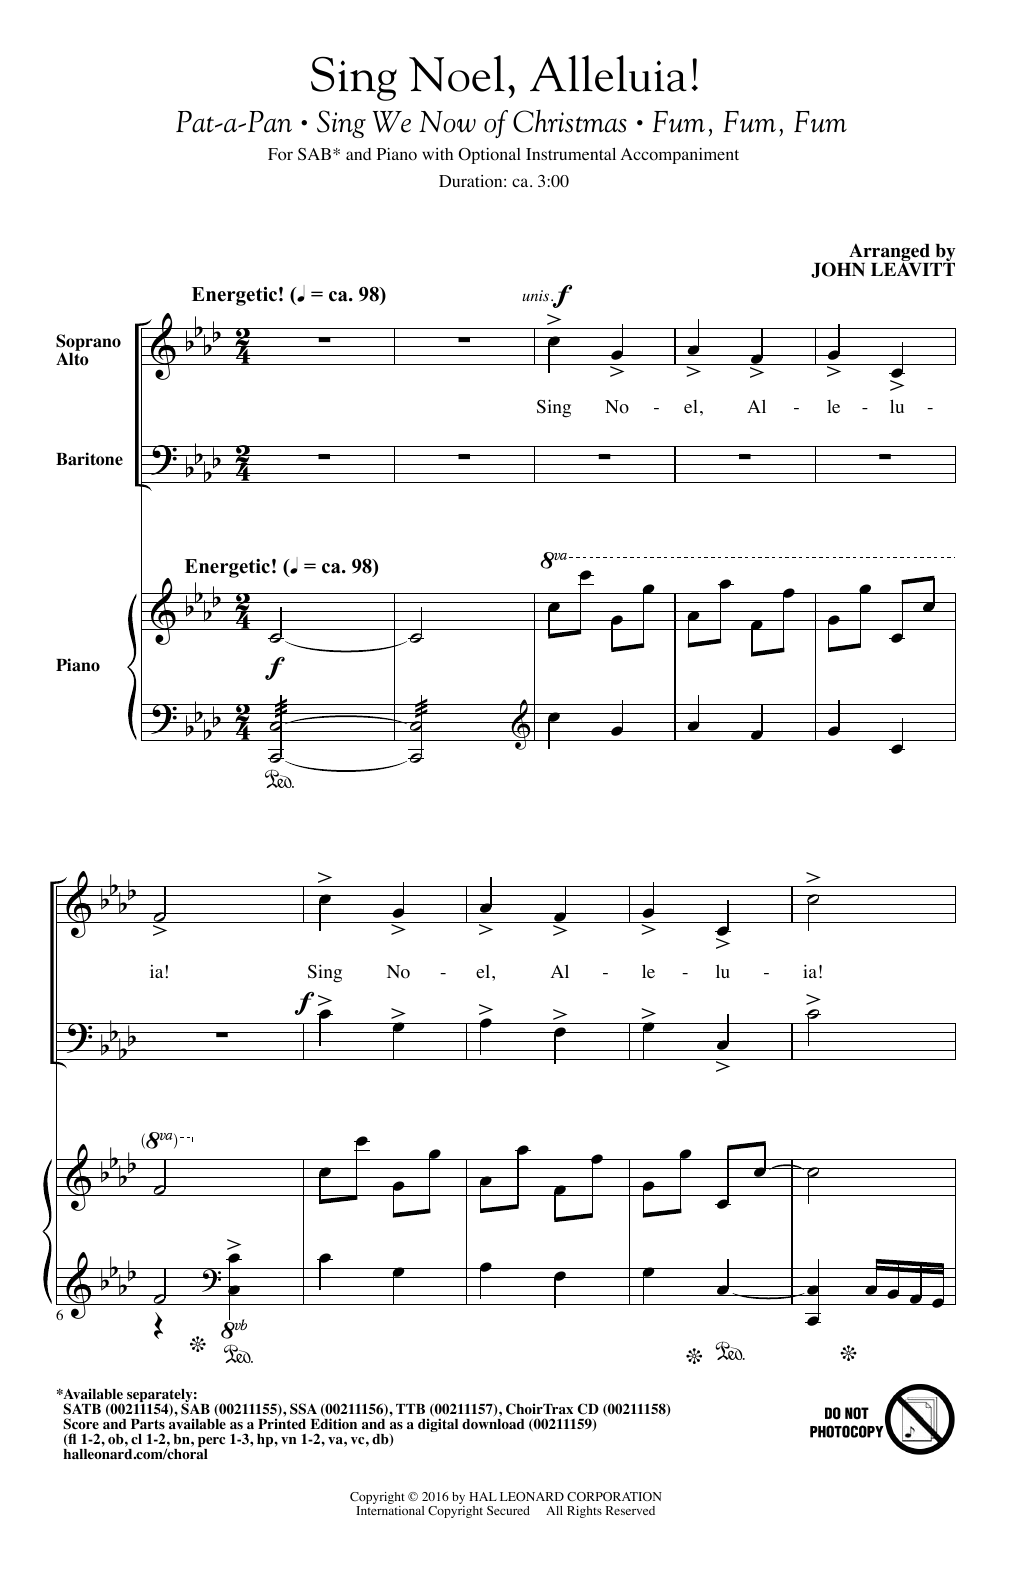 John Leavitt Sing Noel, Alleluia! sheet music notes and chords arranged for TTBB Choir